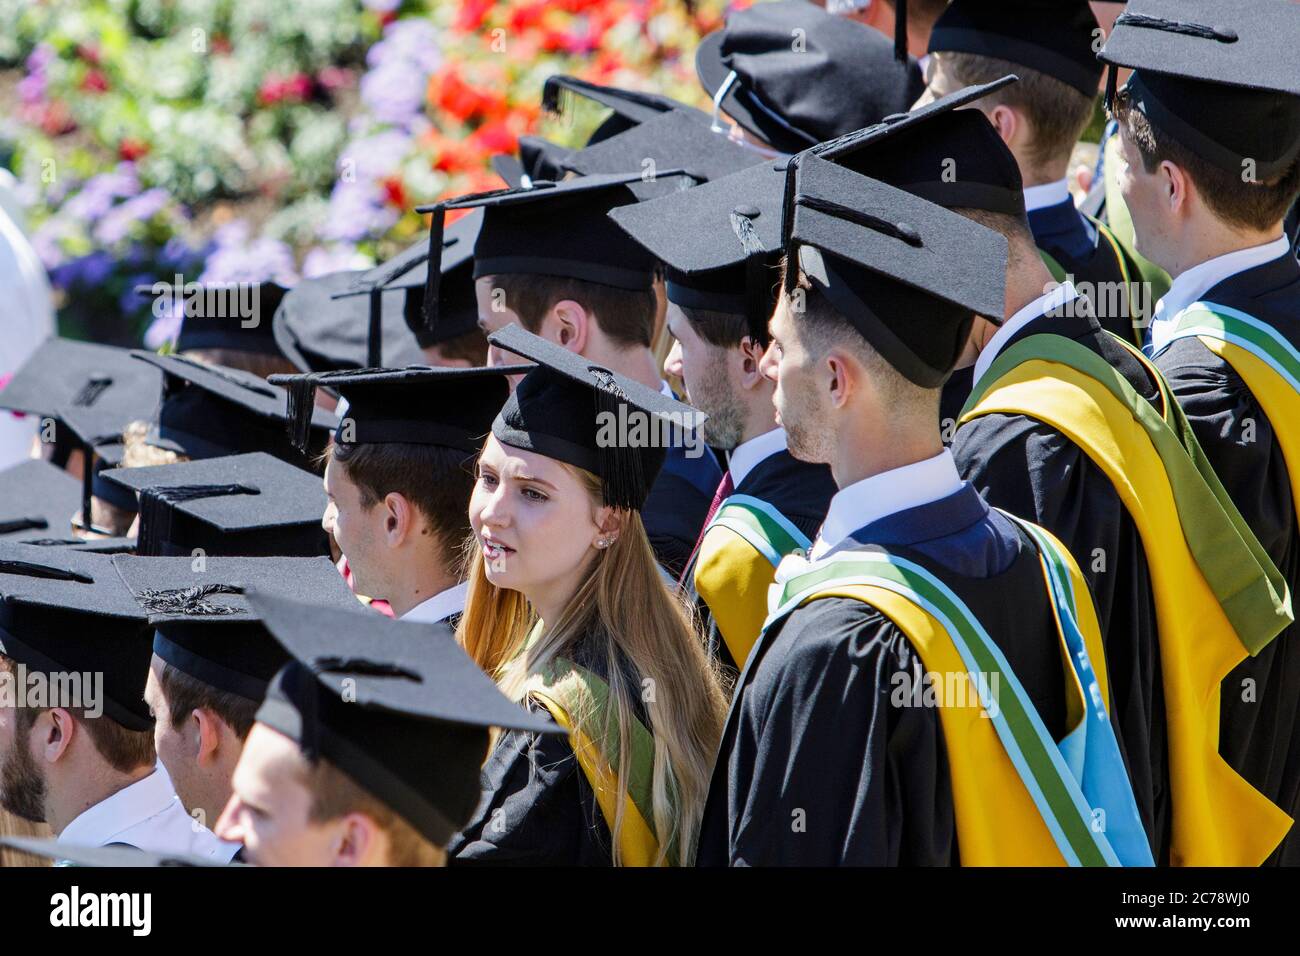 Los estudiantes de la Universidad de Bath en la ceremonia de graduación de sus estudiantes son fotografiados mientras esperan a que se les tome la fotografía de graduación. 5 de julio de 2017. Foto de stock